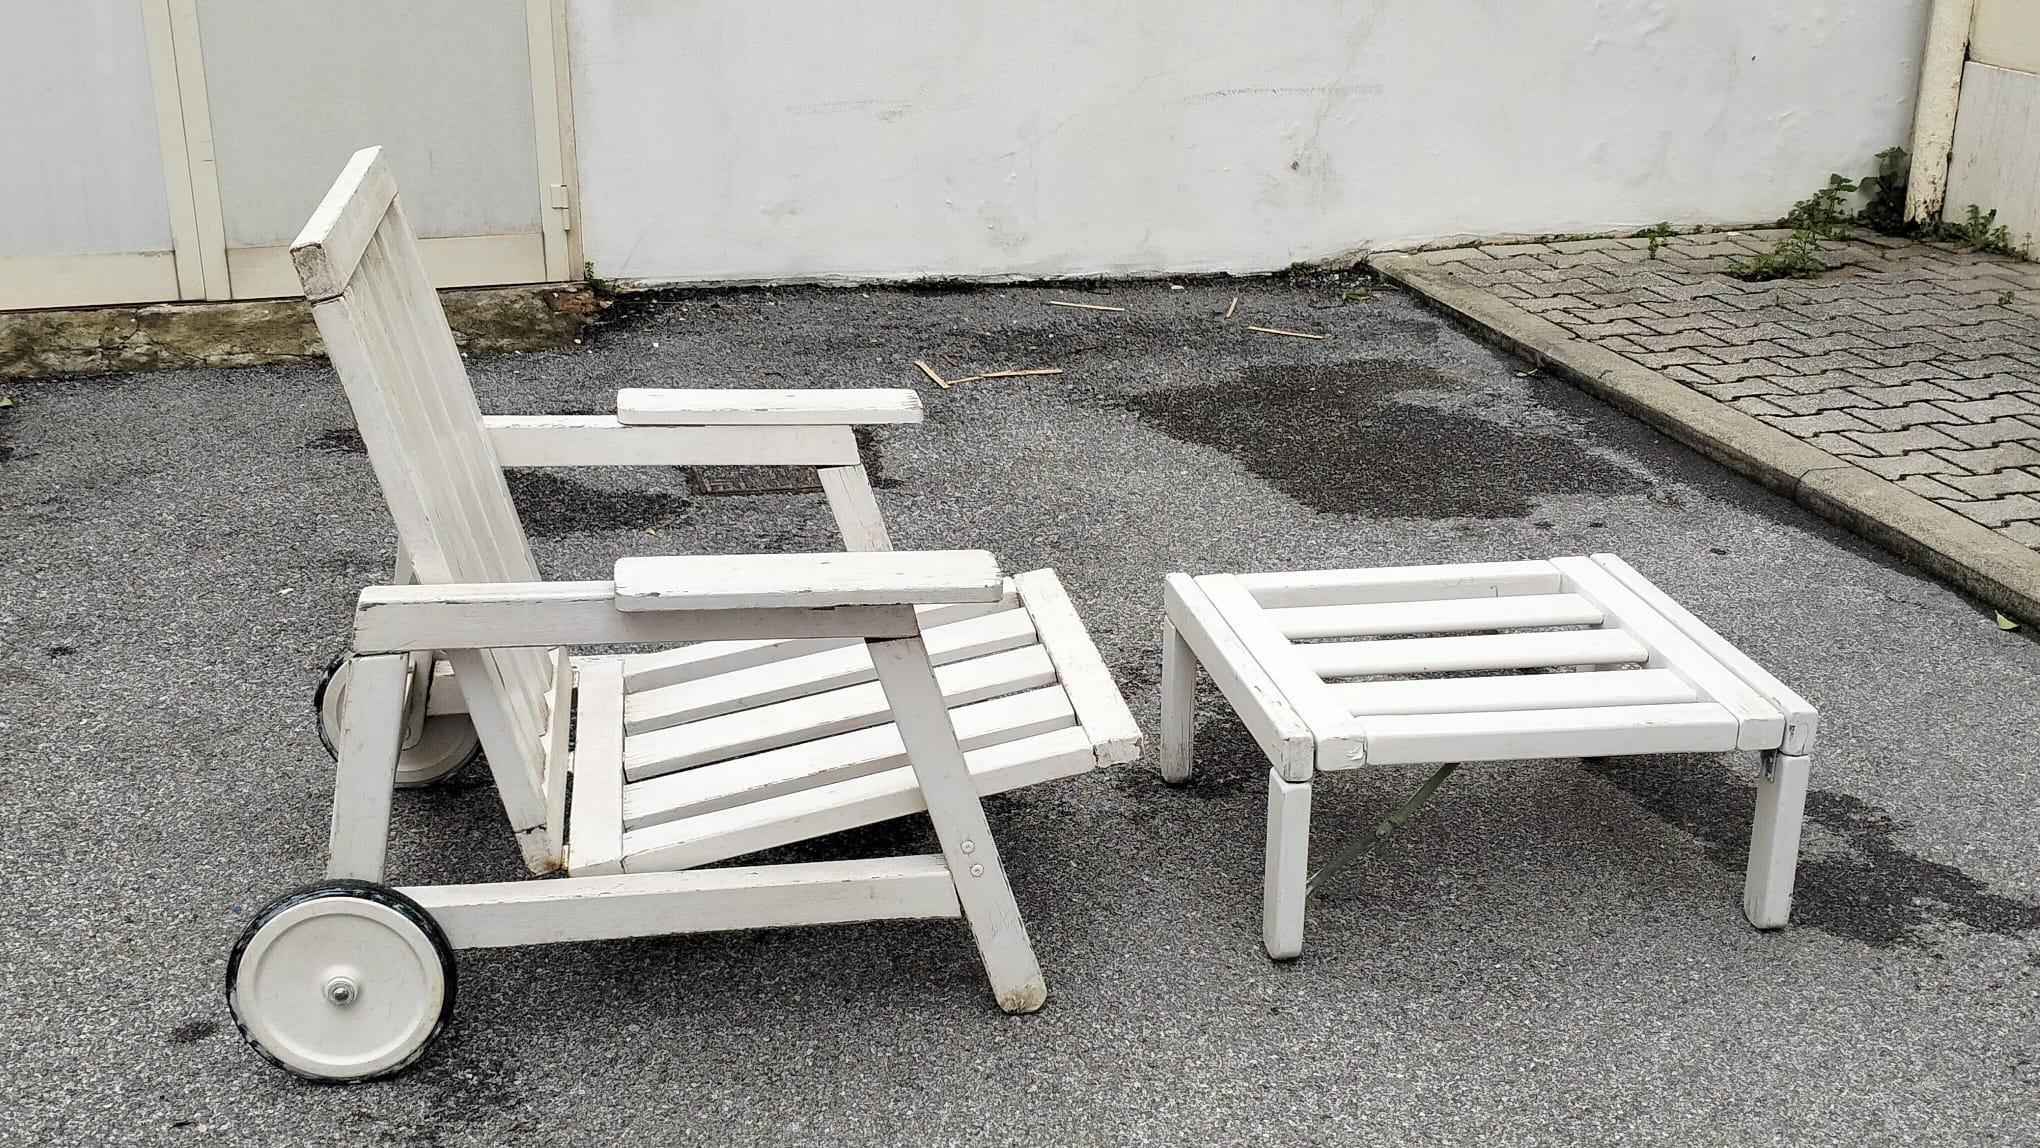 Carlo Hausner designer  Longue Chairs con Ottomano 1960,  produzione Fratelli Reguitti ,  Italia. La poltrona è reclinabile , è in legno laccato bianco, questo pezzo è originale e autentico , anche il colore è quello originale . Struttura perfetta .